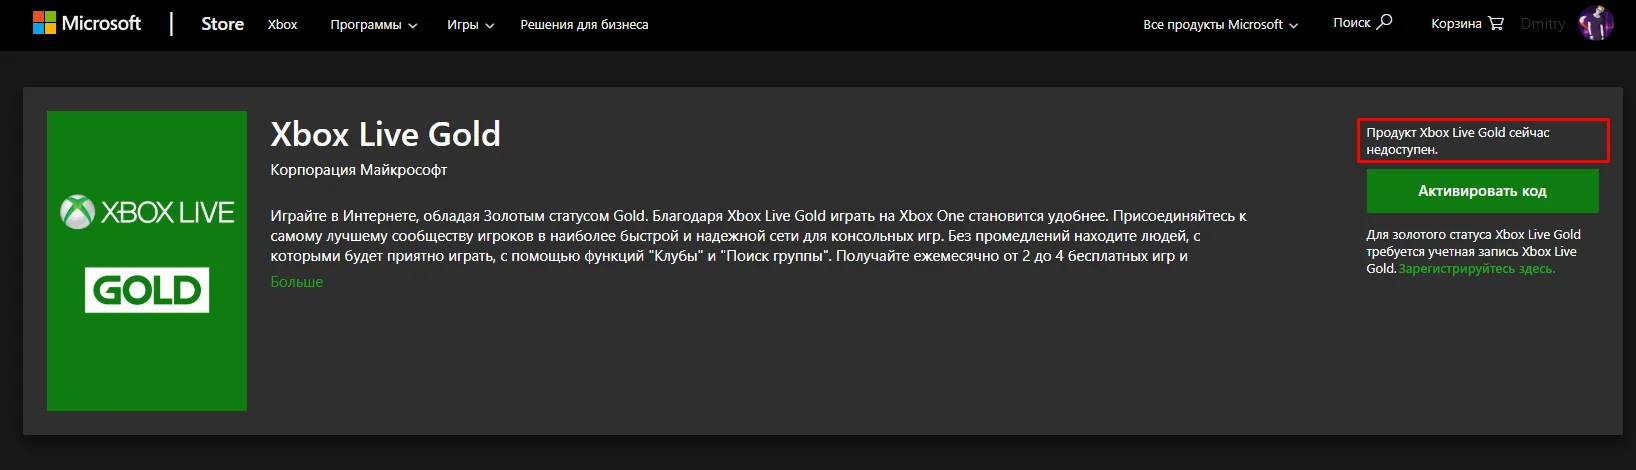 Microsoft больше не будет продавать подписки на сервисы Xbox в Microsoft Store в России - фото 2